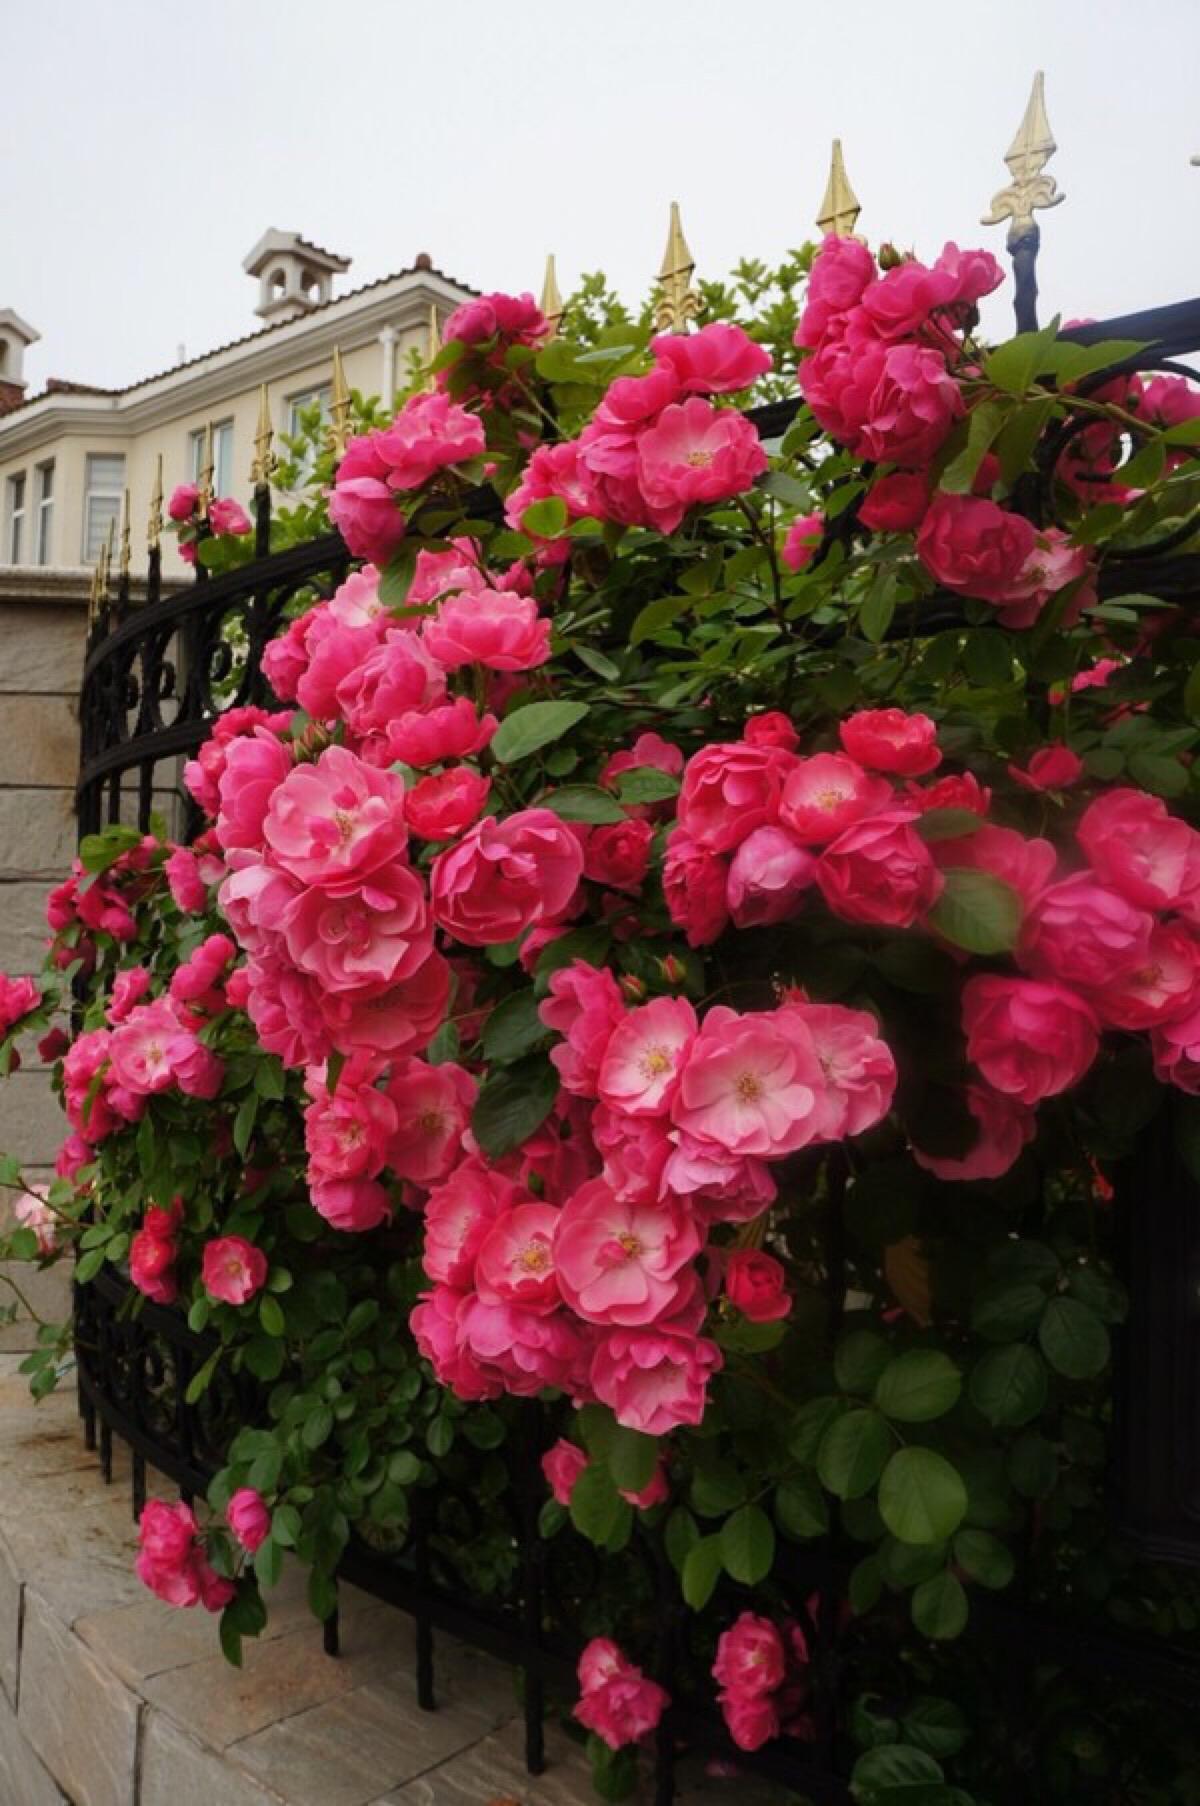 埃菲尔铁塔是蔷薇科蔷薇属多年生草本植物,喜光,耐旱,为一种花卉植物